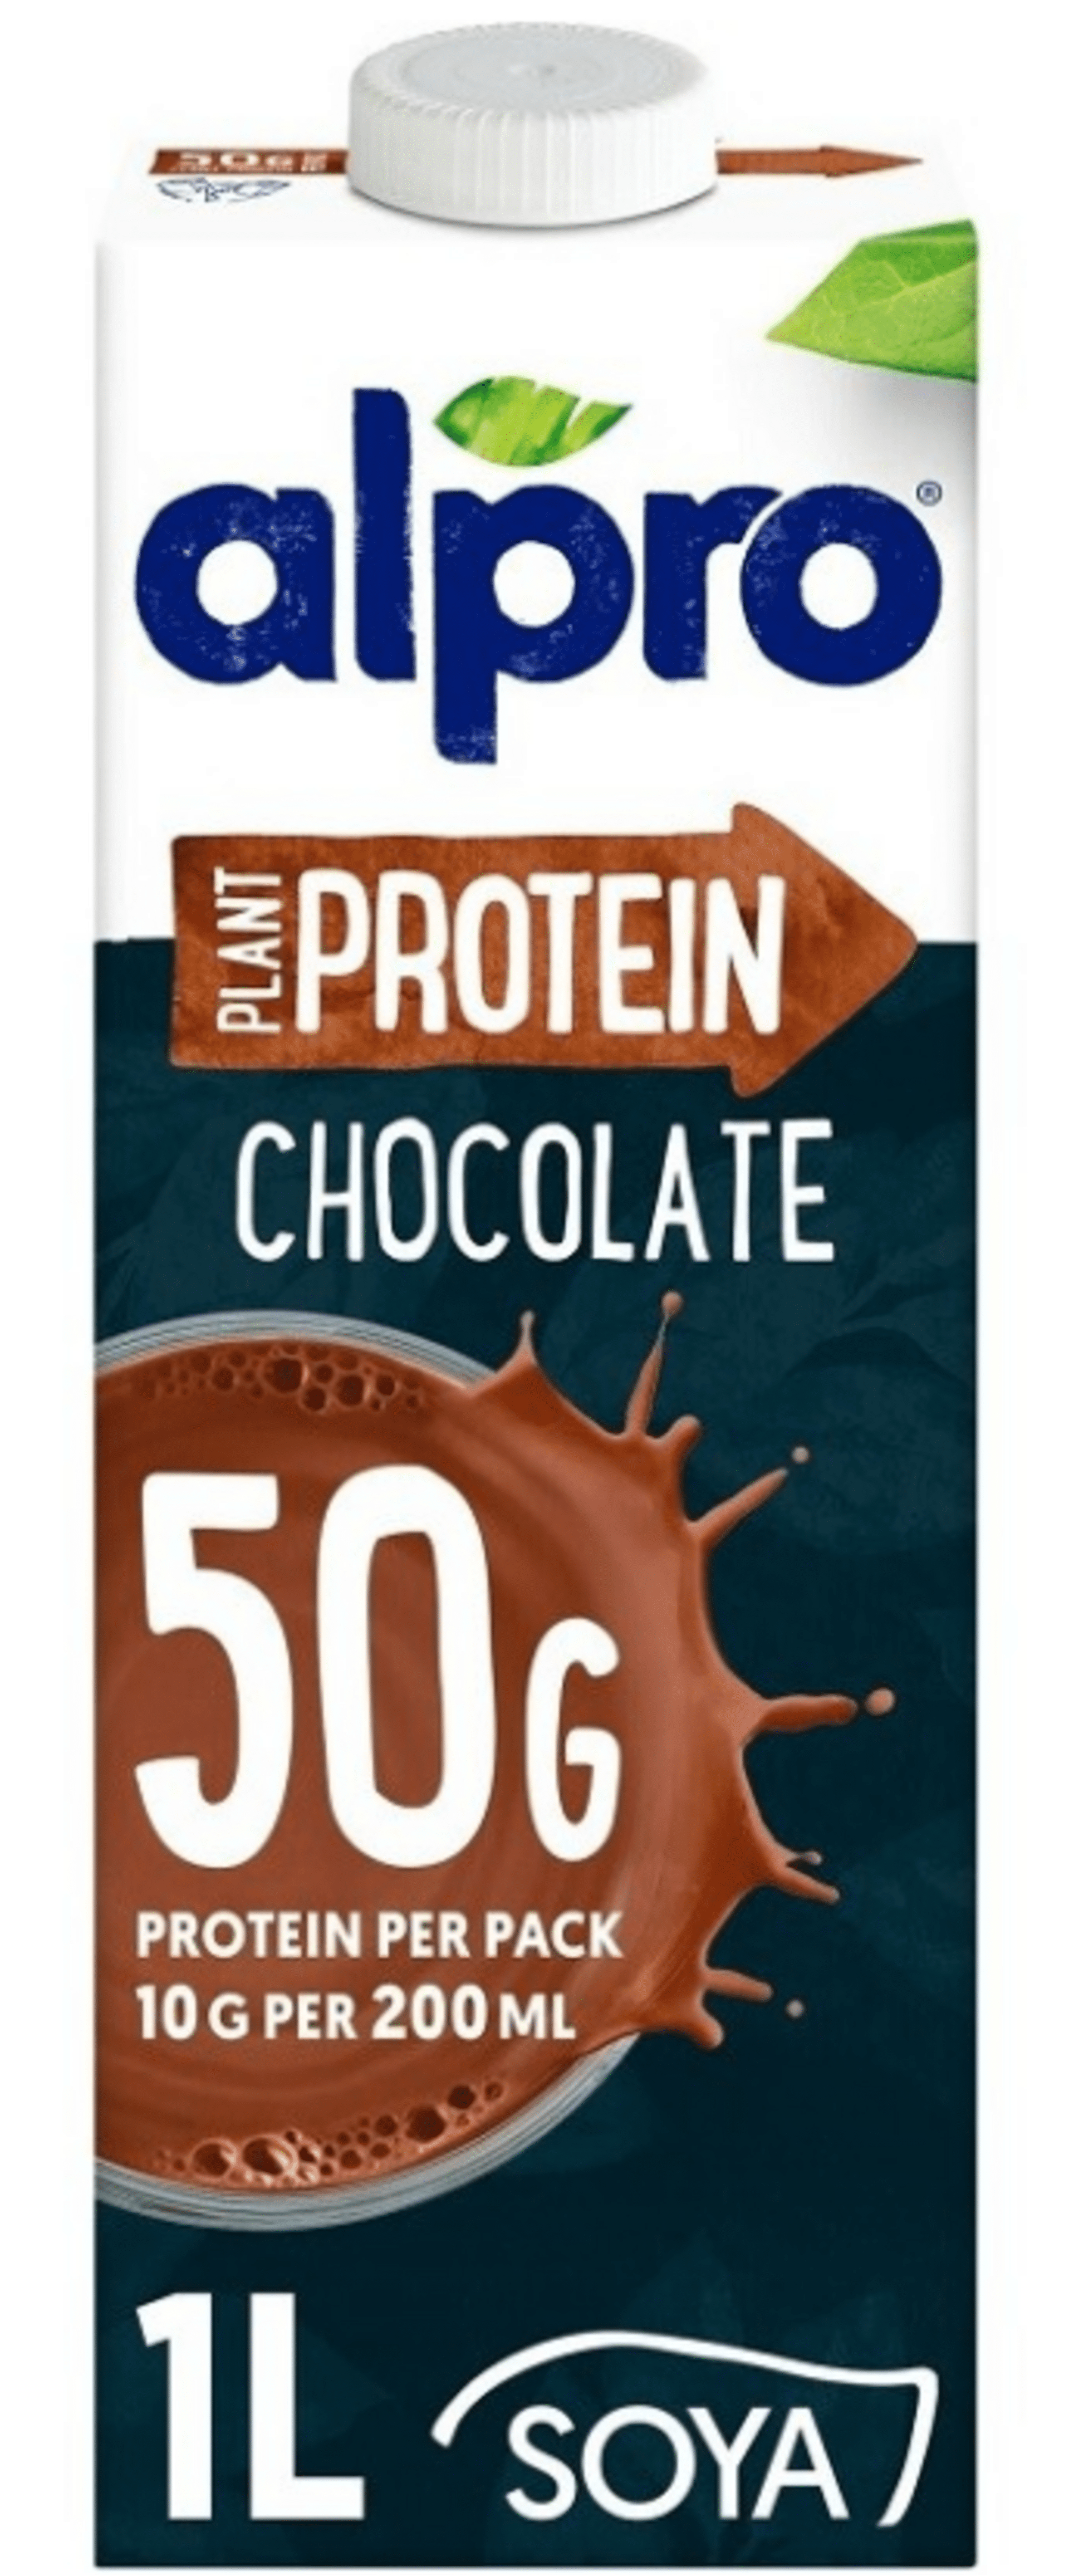 Alpro High Protein sójový nápoj s čokoládovou příchutí